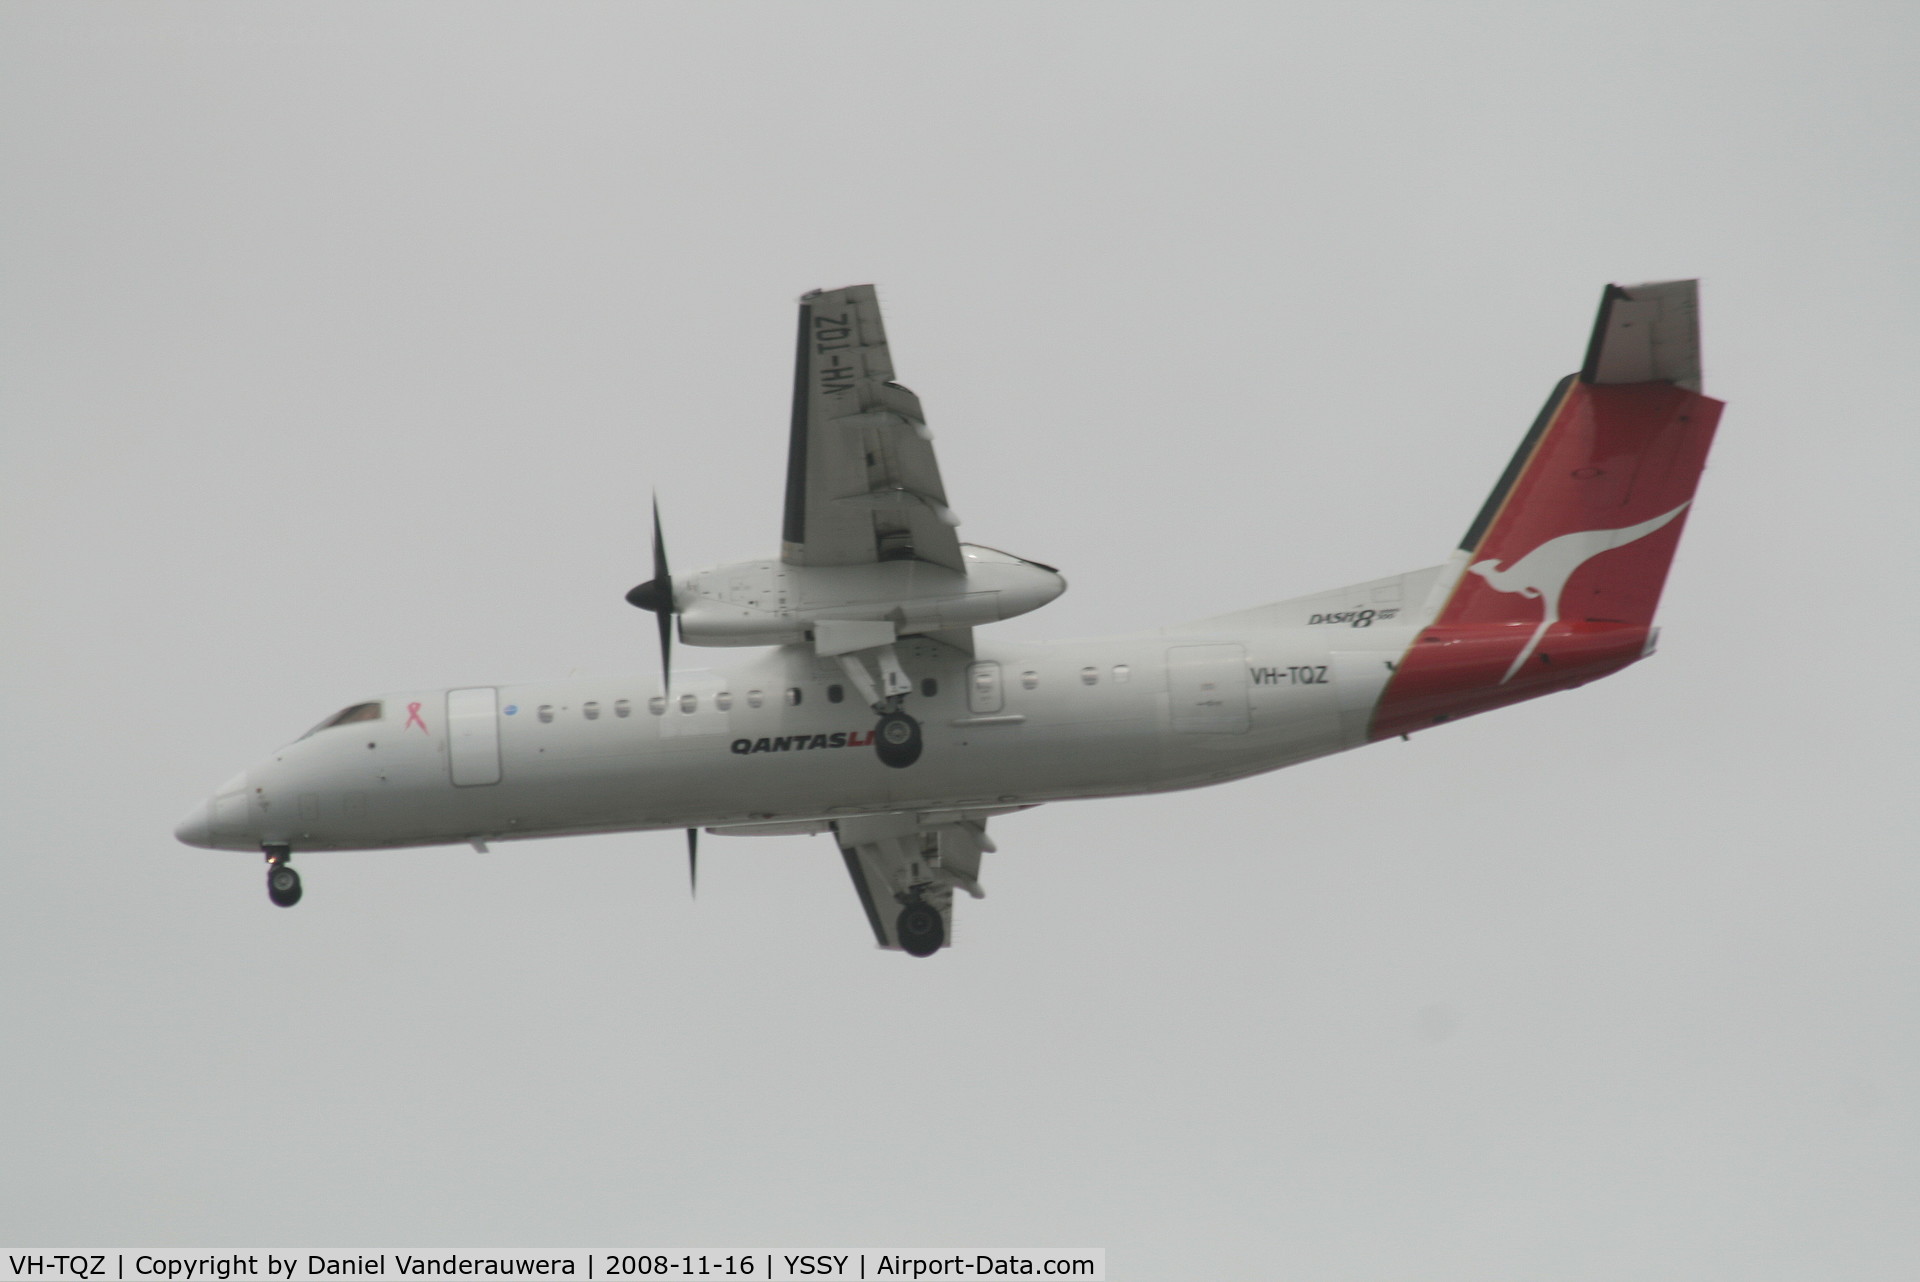 VH-TQZ, 2000 De Havilland Canada DHC-8-315Q Dash 8 C/N 555, descending to rwy 16L